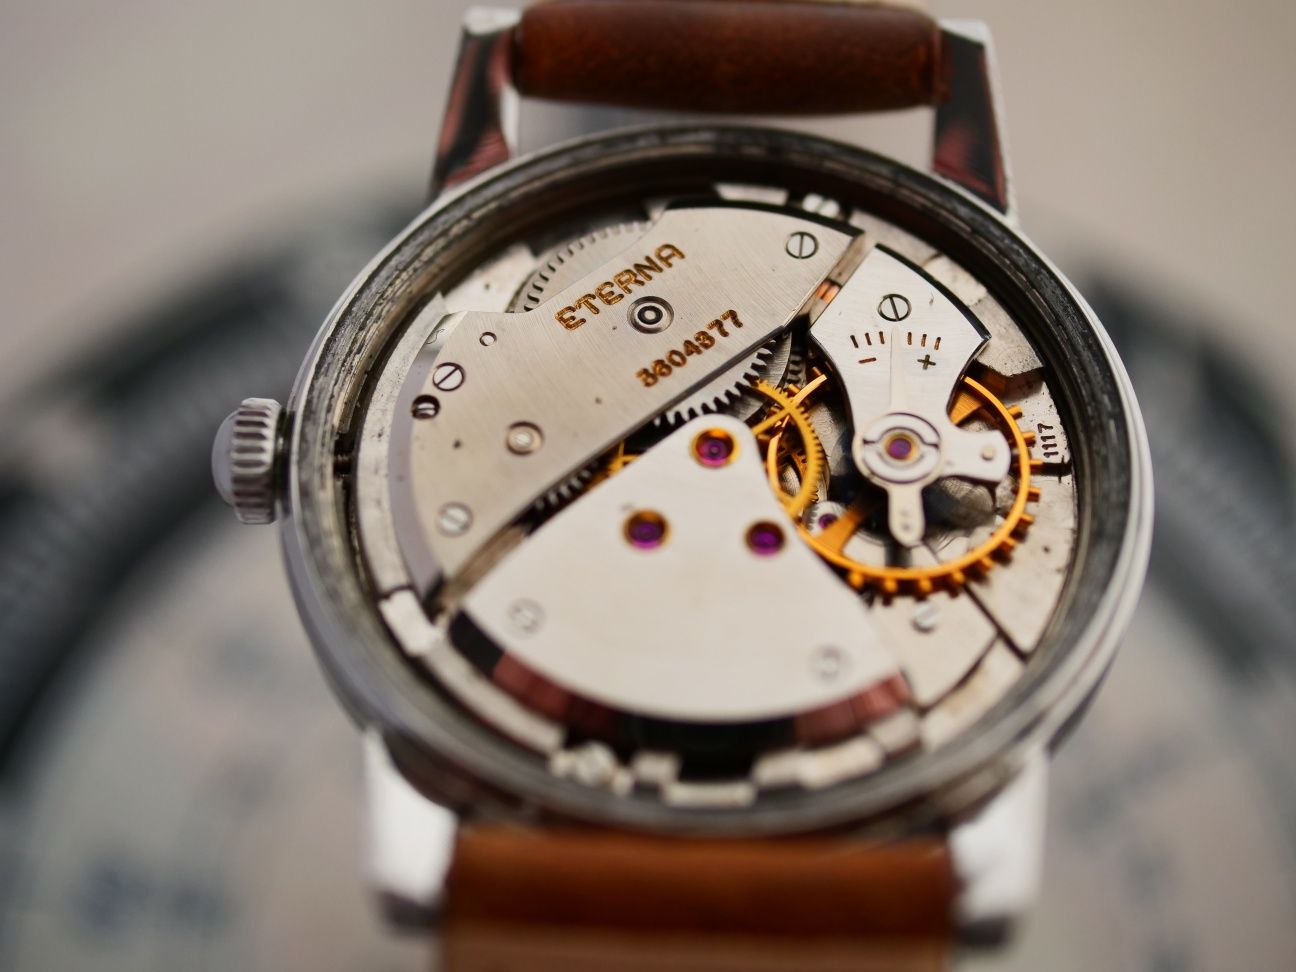 Etetna cal 1117 z 1952r swiss made zegarek szwajcarski vintage stary